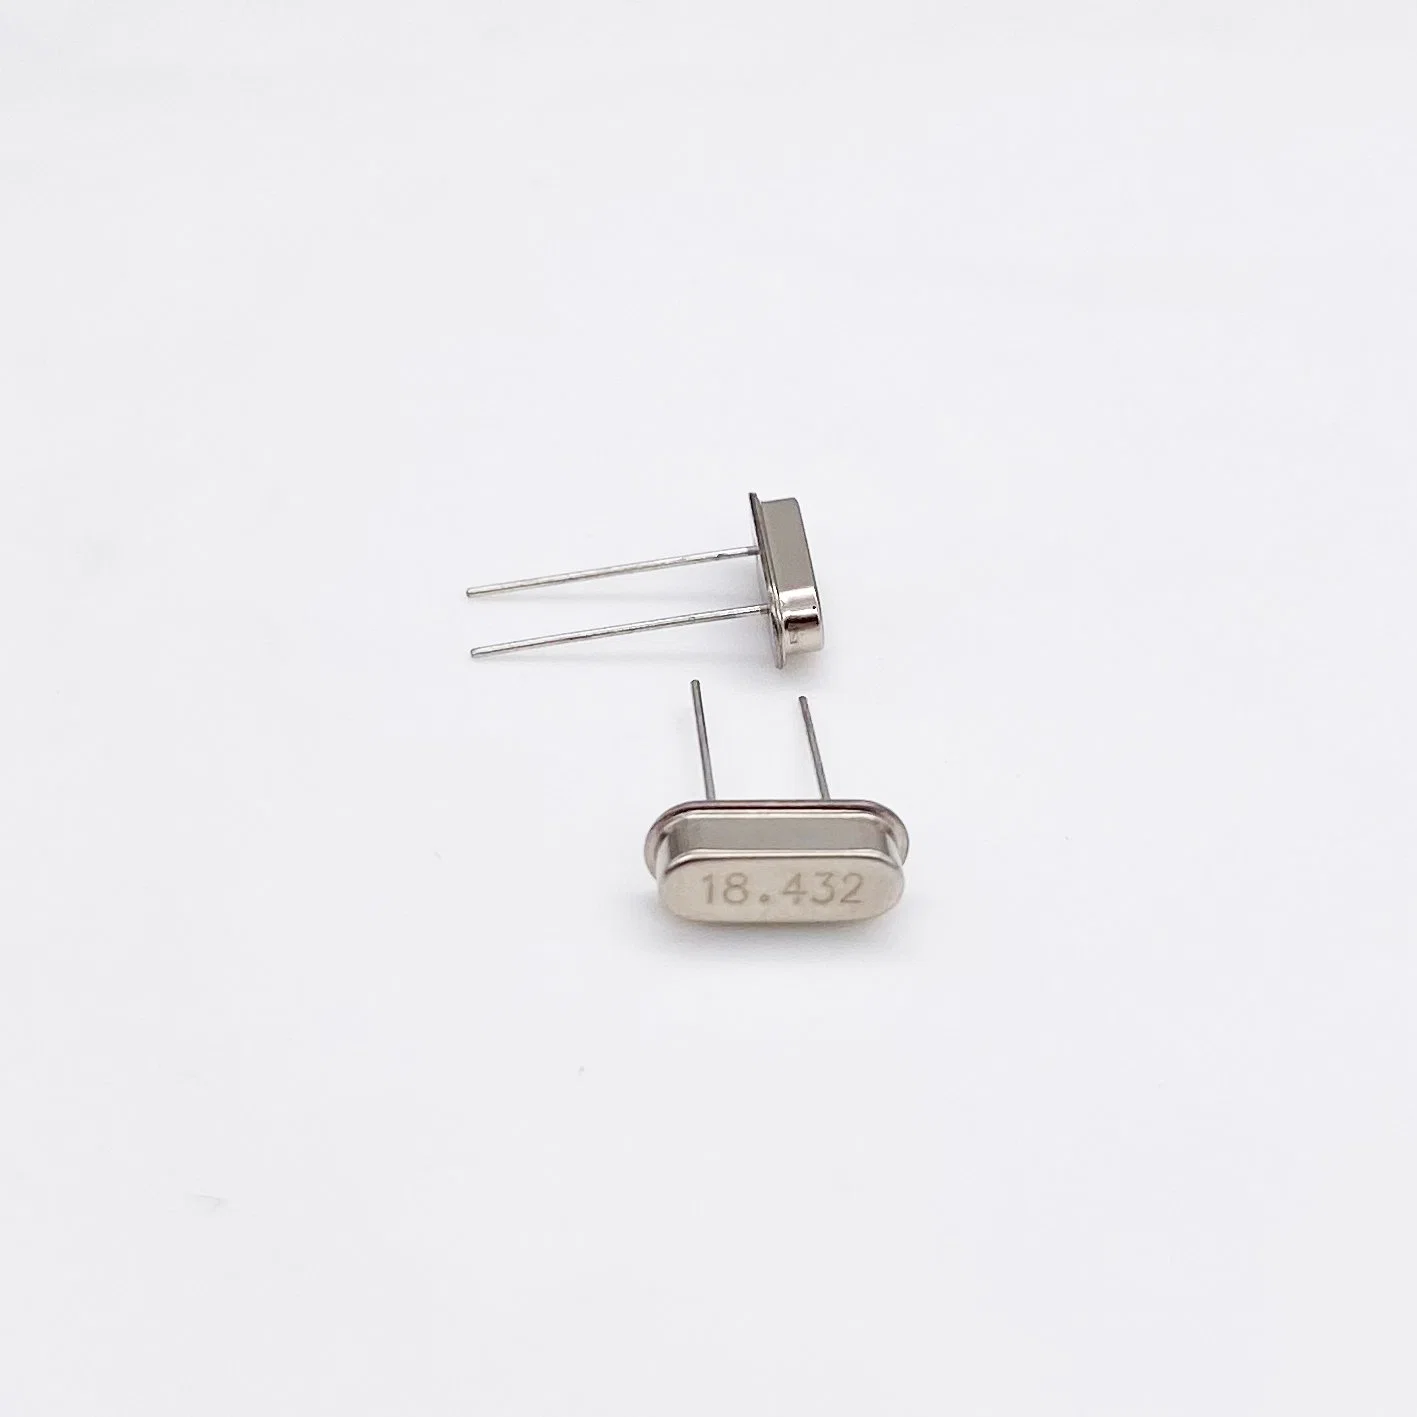 Hc-49s Oscilador de cristal de cuarzo de cerámica de resonador electrónico el resonador